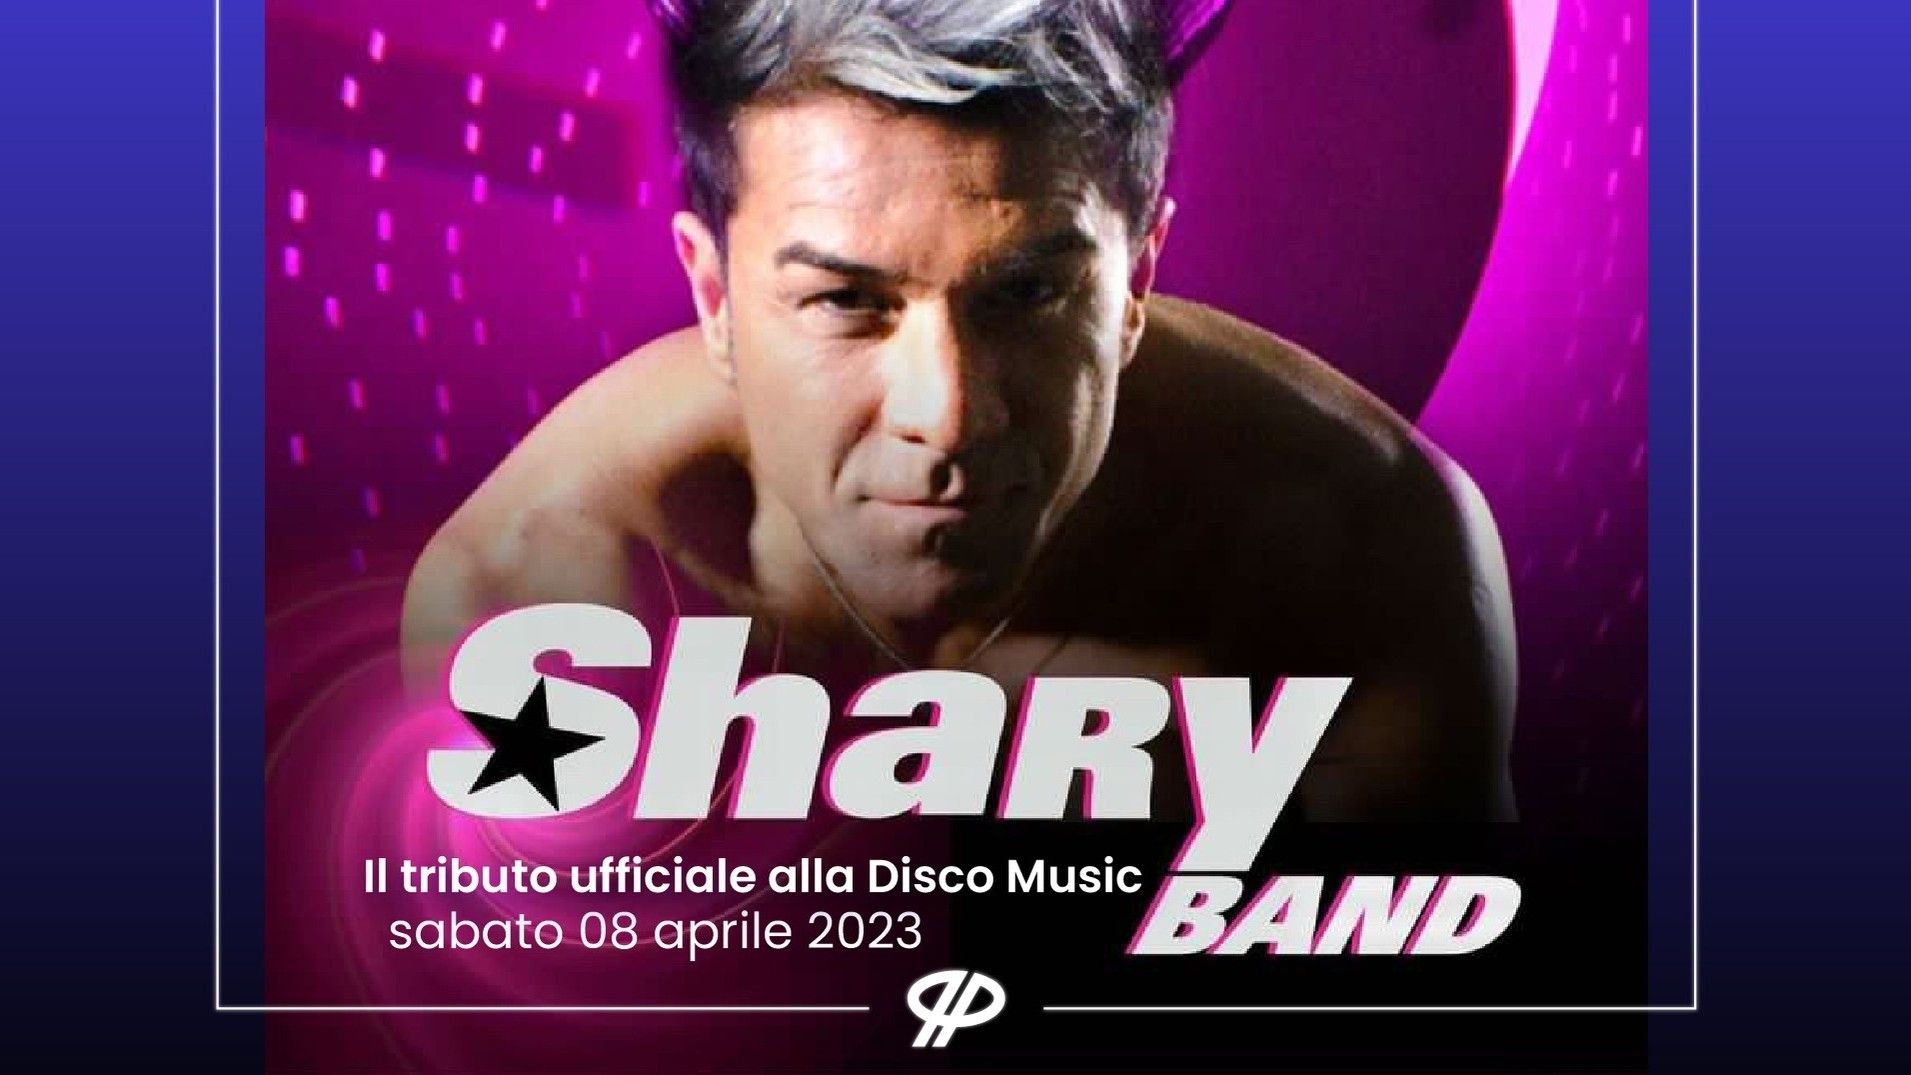 Shary Band - Tributo ufficiale alla disco music